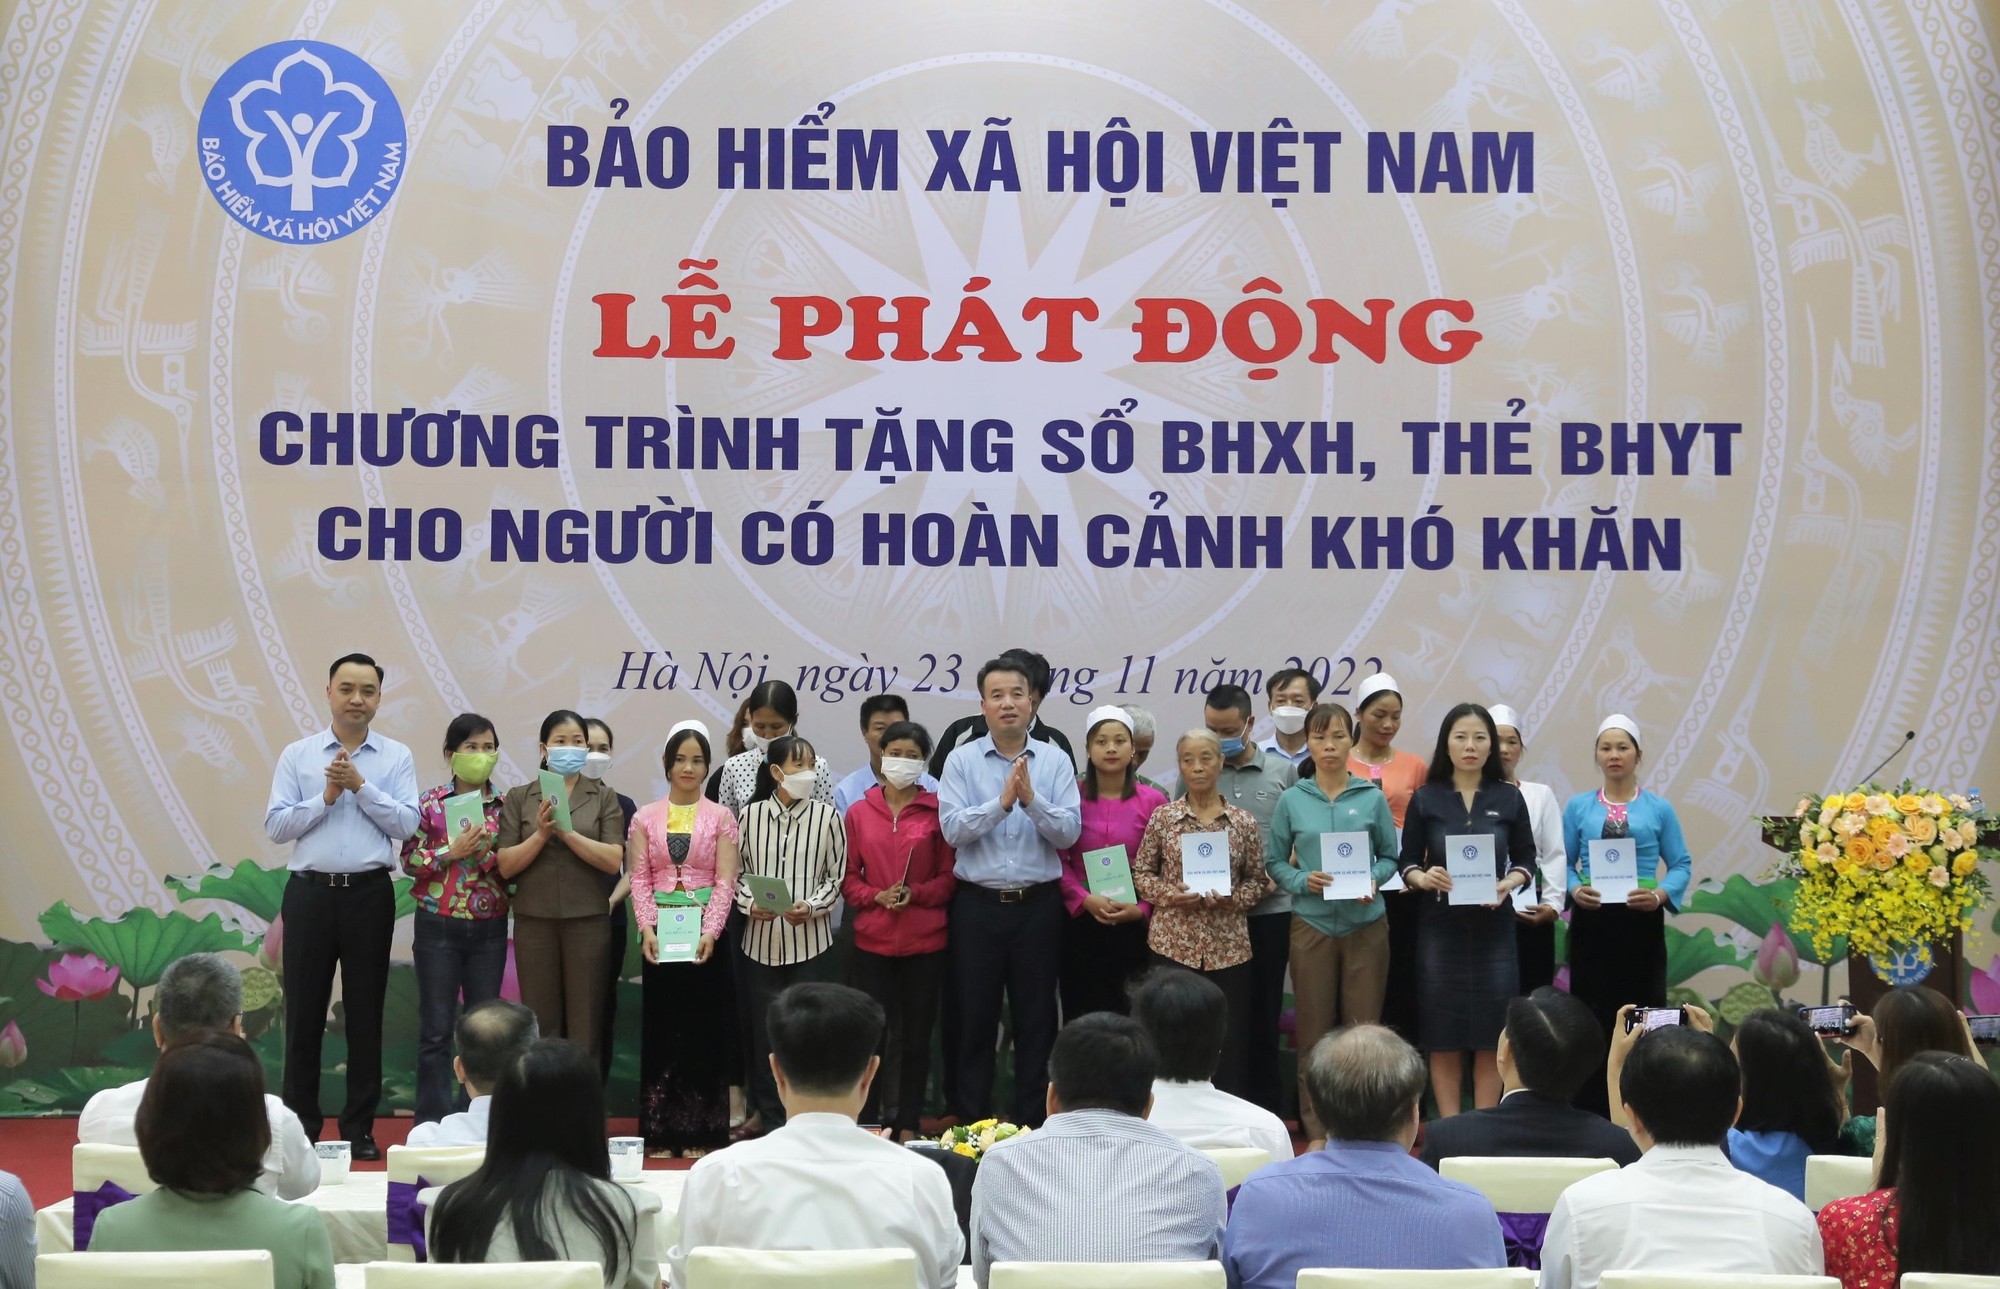 Thẻ BHYT là một phần quan trọng trong hệ thống chăm sóc sức khỏe của chính phủ Việt Nam. Với thẻ này, mọi người có thể sử dụng nhiều dịch vụ y tế tốt nhất mà không phải lo lắng về chi phí. Hãy cùng xem hình ảnh và tìm hiểu thêm về quyền lợi sức khỏe của chúng ta.